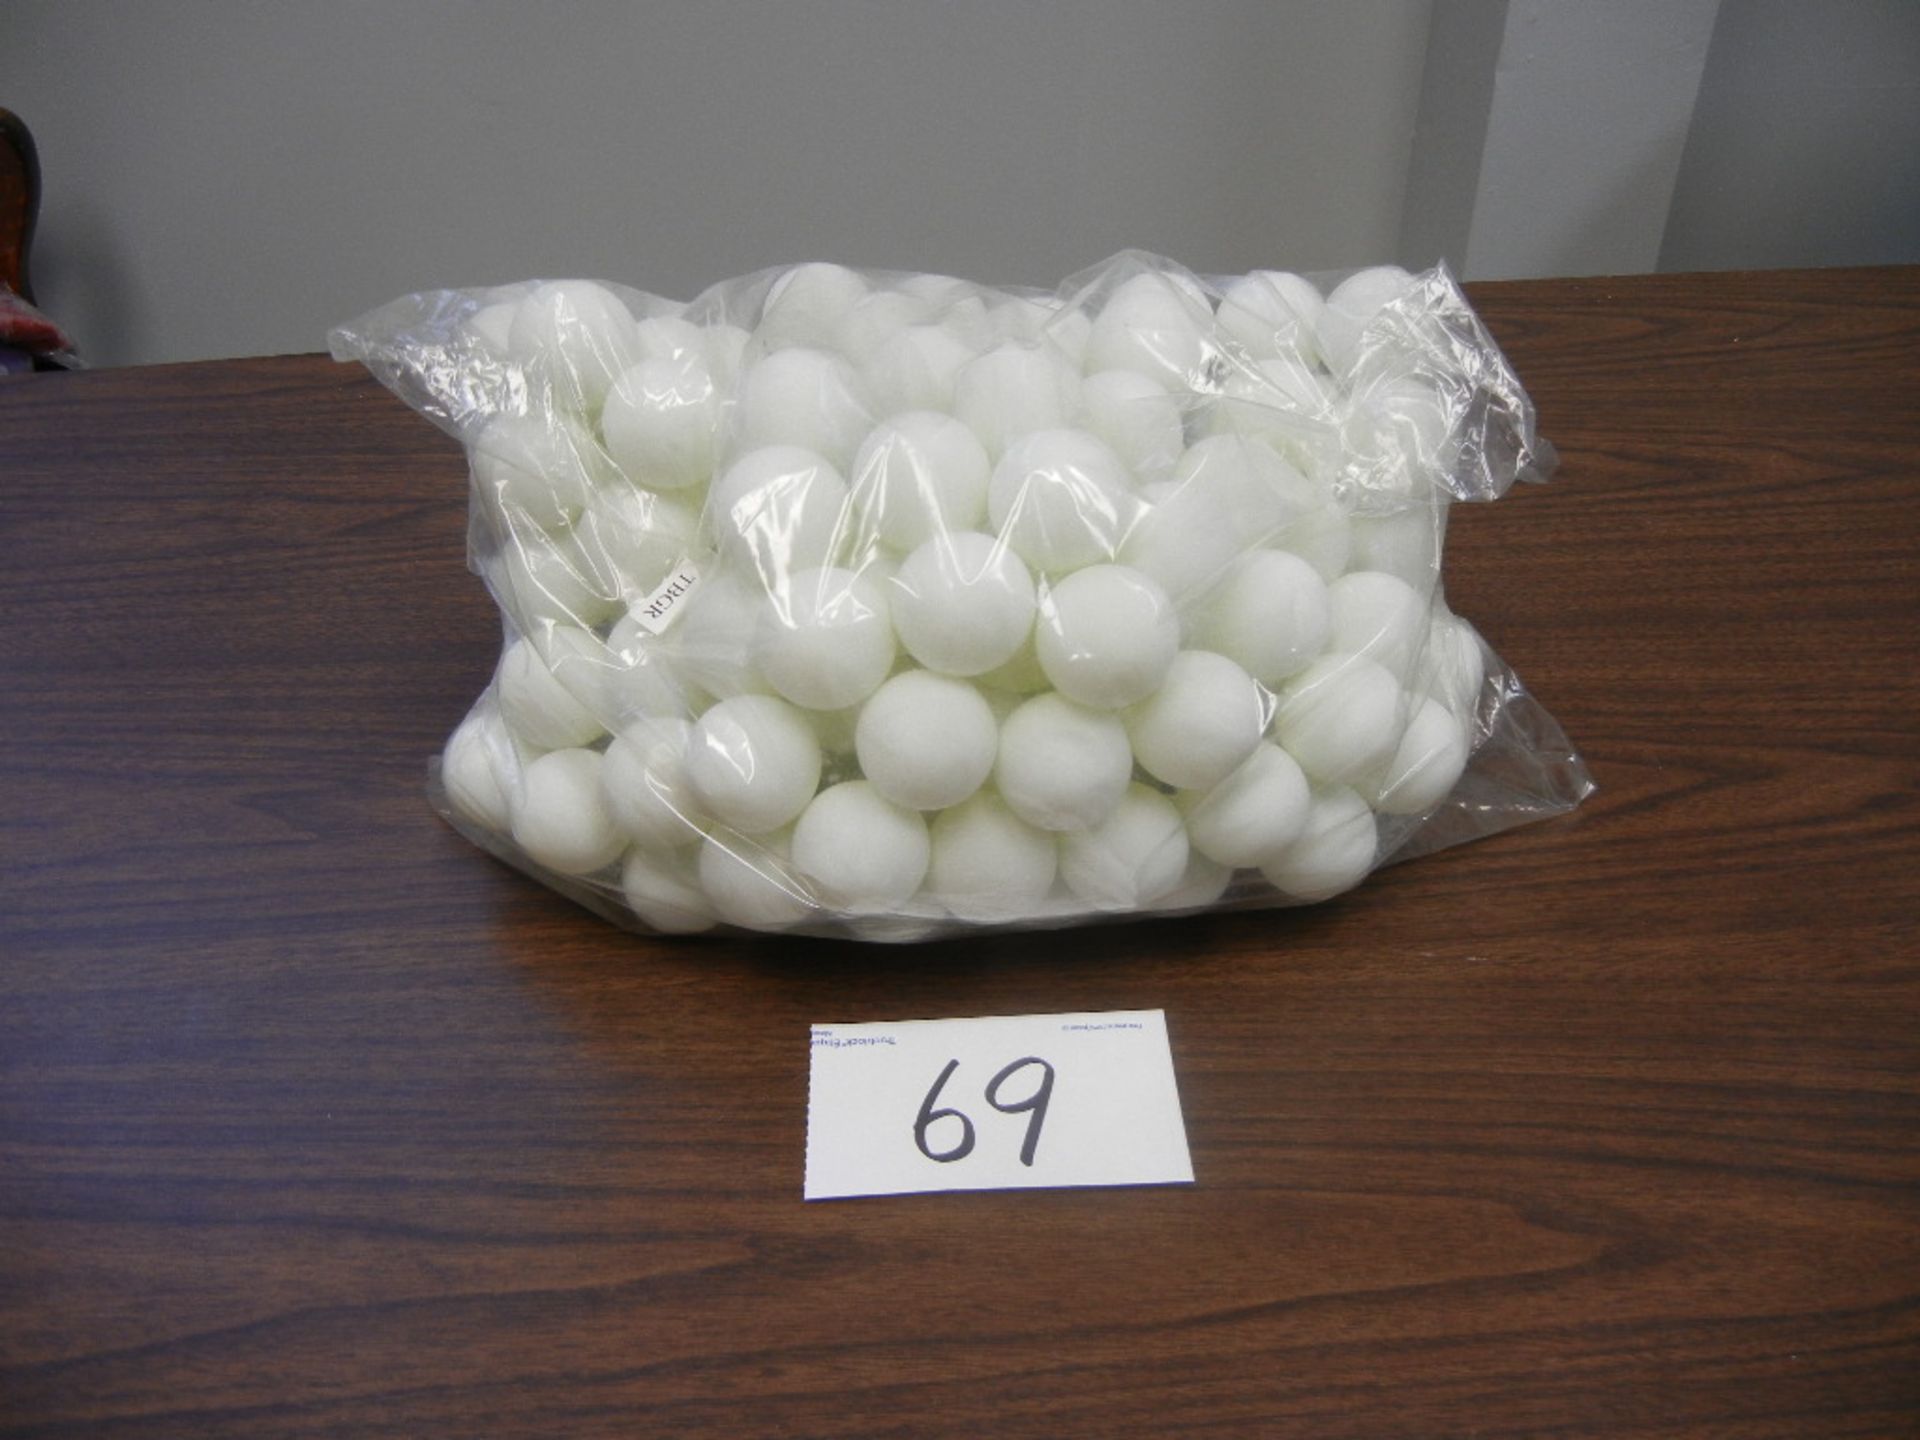 Packs of Bulk Ping Pong Balls 20 packs of 144 per case.